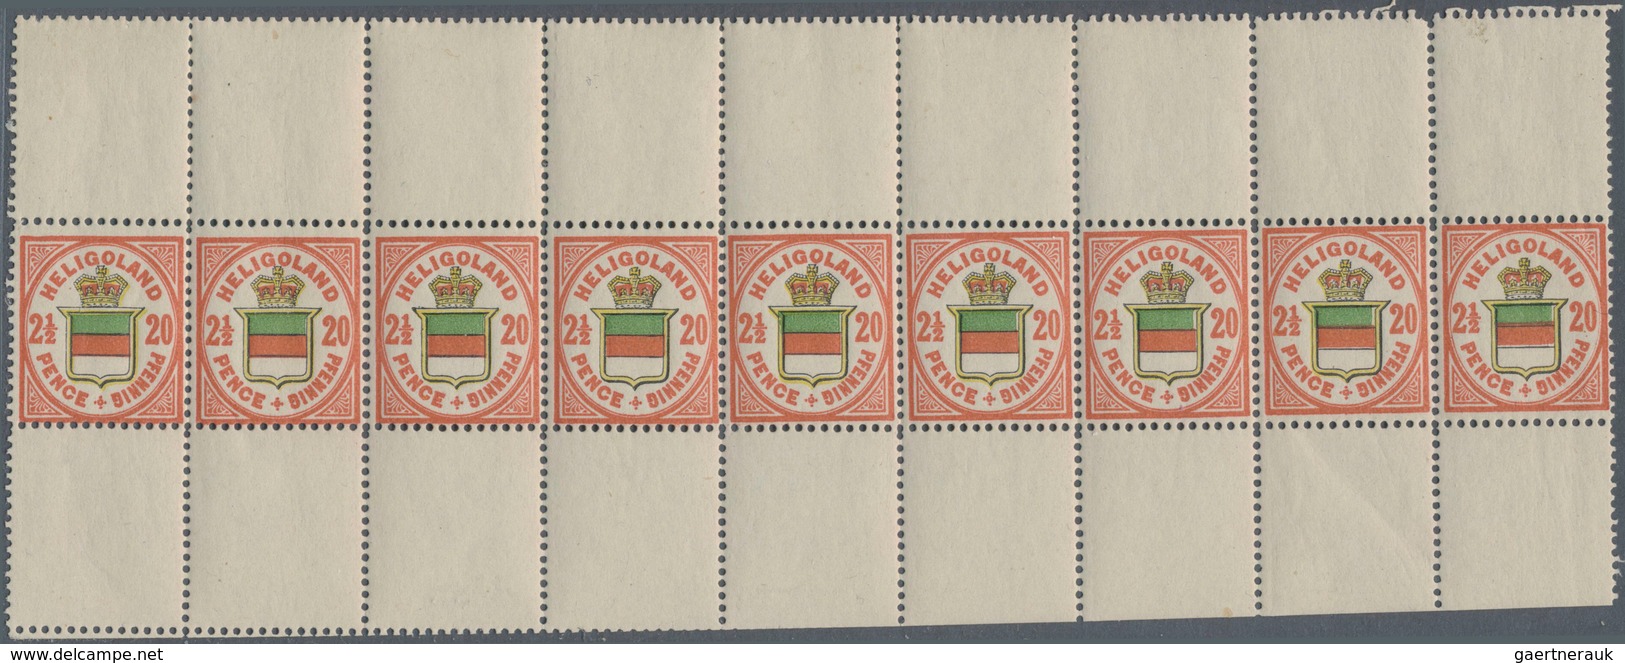 Helgoland - Marken und Briefe: 1867/1890, Zusammenstellung mit Marken und Belegen, dabei u.a. MiNr.